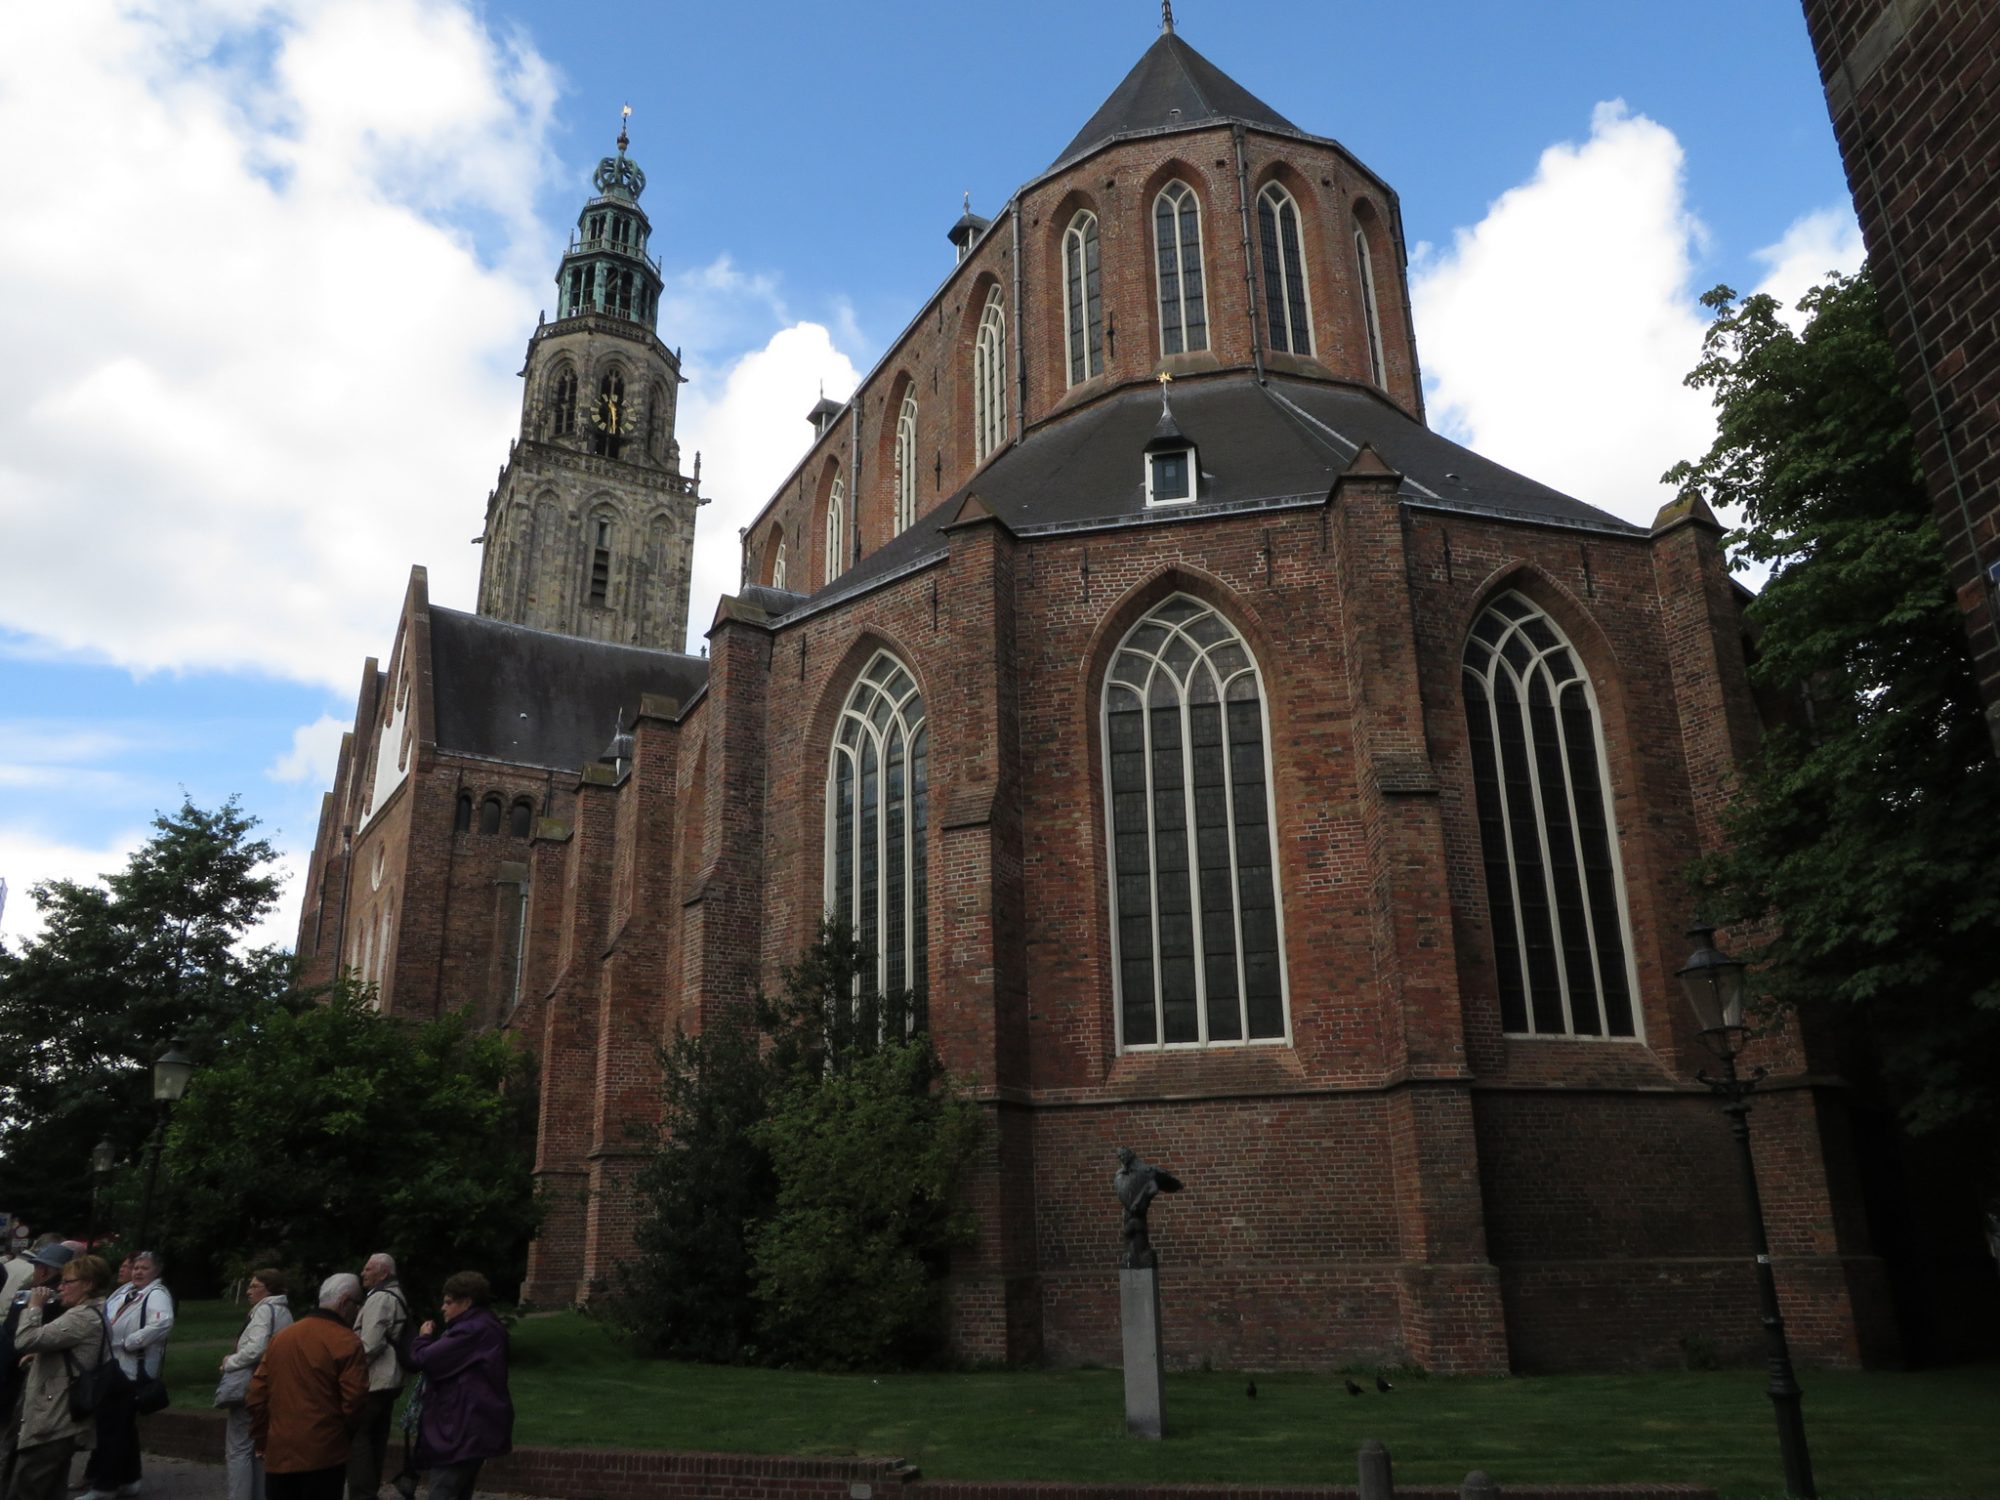 Songs of Praise in de taal van Sytze de Vries (Martinikerk)